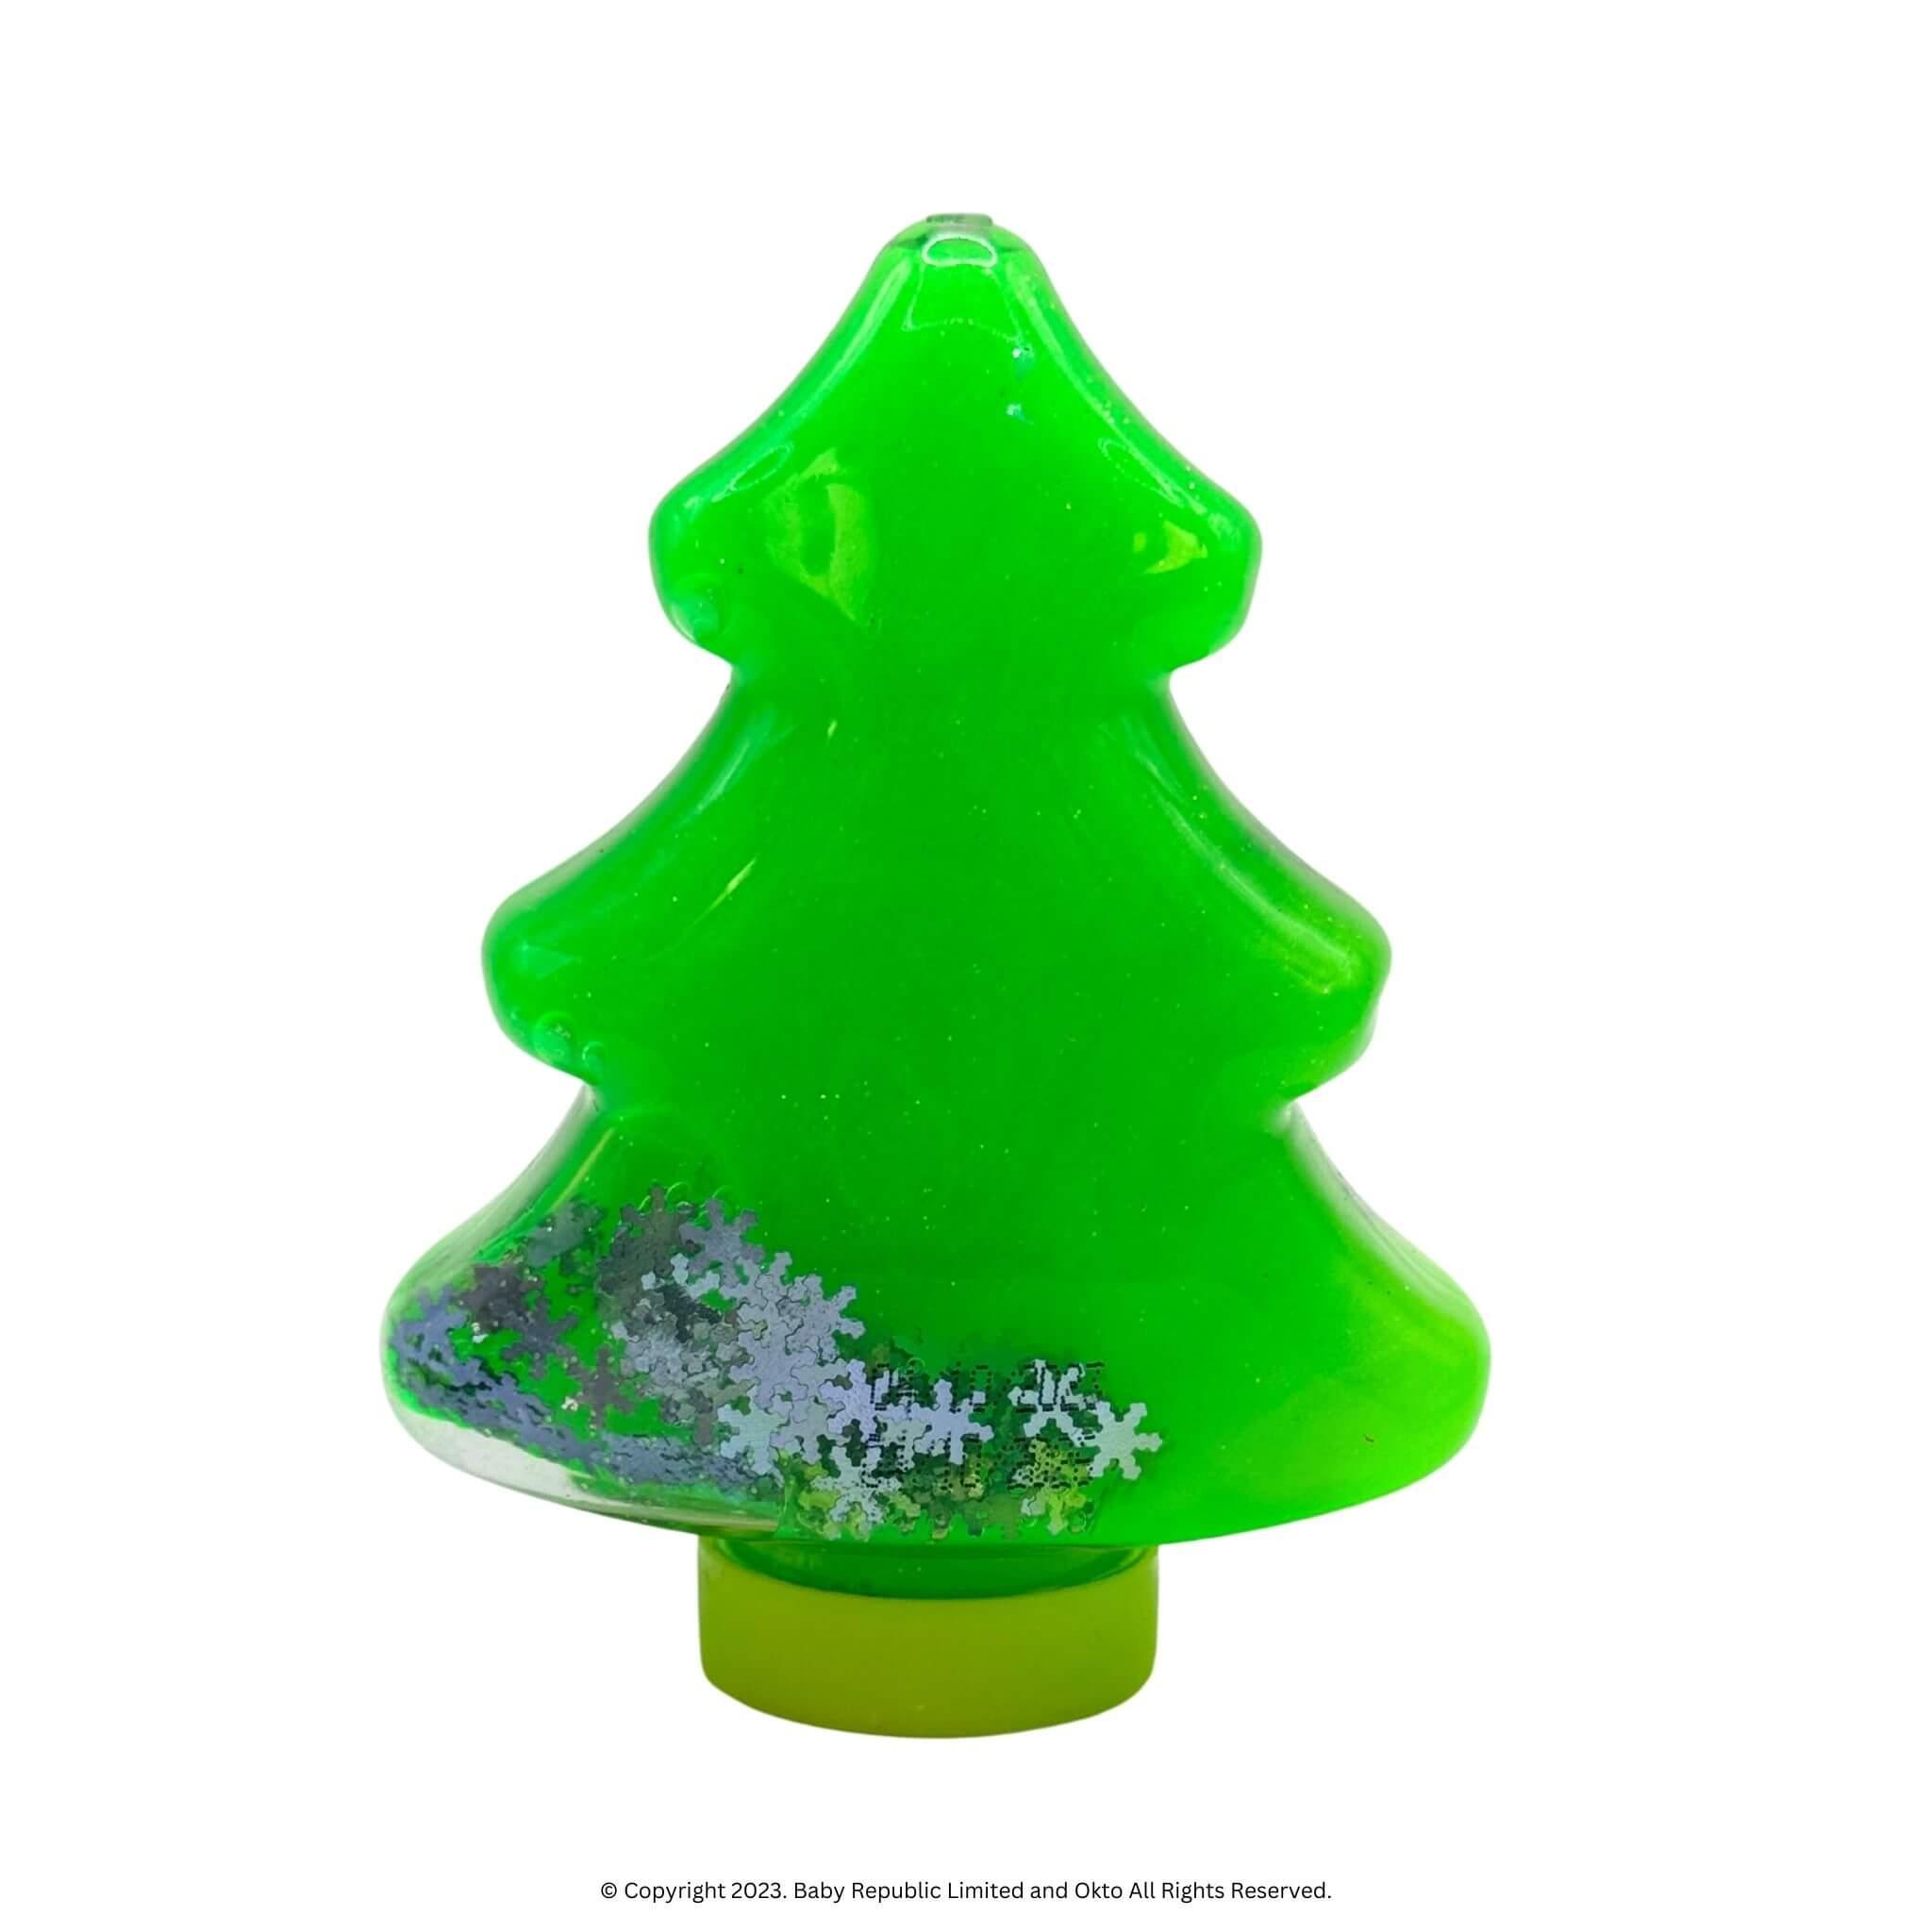 Christmas-Tree-Slime